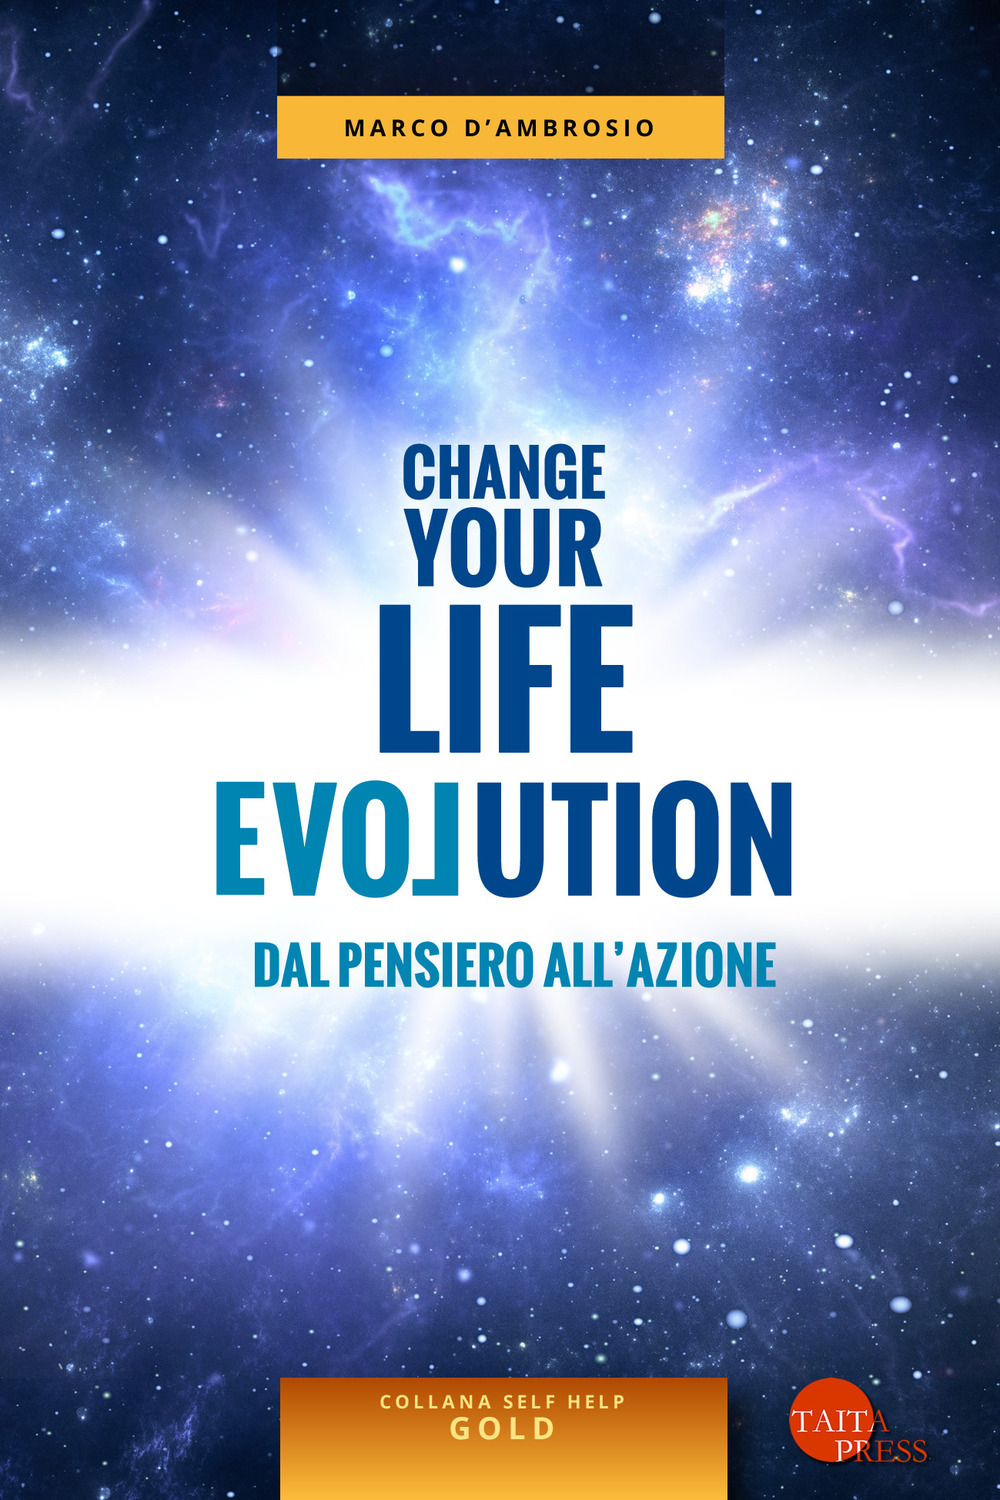 Change your life evolution. Dal pensiero all'azione